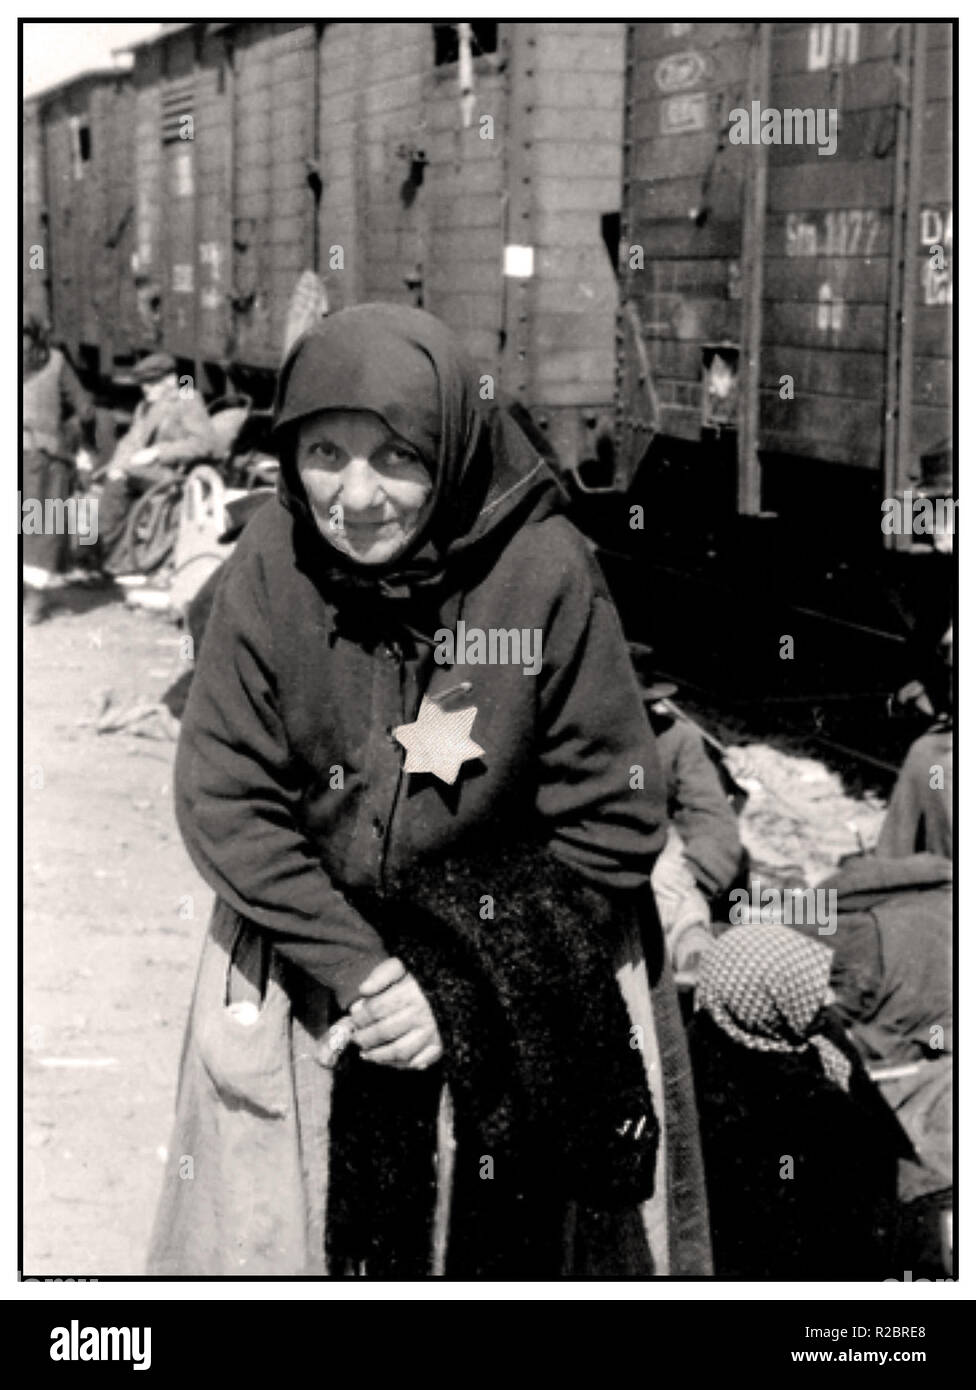 La vieille dame juive hongroise d'Auschwitz-Birkenau, précédemment internée dans le ghetto de Tét ou de Berehovo, arrive à Auschwitz II par une voiture de bétail insalutaire, également connue sous le nom d'Auschwitz-Birkenau. Elle porte l'étoile jaune désignée obligatoire par les nazis. Son expression hantante à la caméra est un rappel tragique et durable de l'histoire du destin imminent et indicible pour elle et pour plusieurs millions comme elle, dont le seul «crime» était d'être juive ... Auschwitz-Birkenau Pologne Banque D'Images